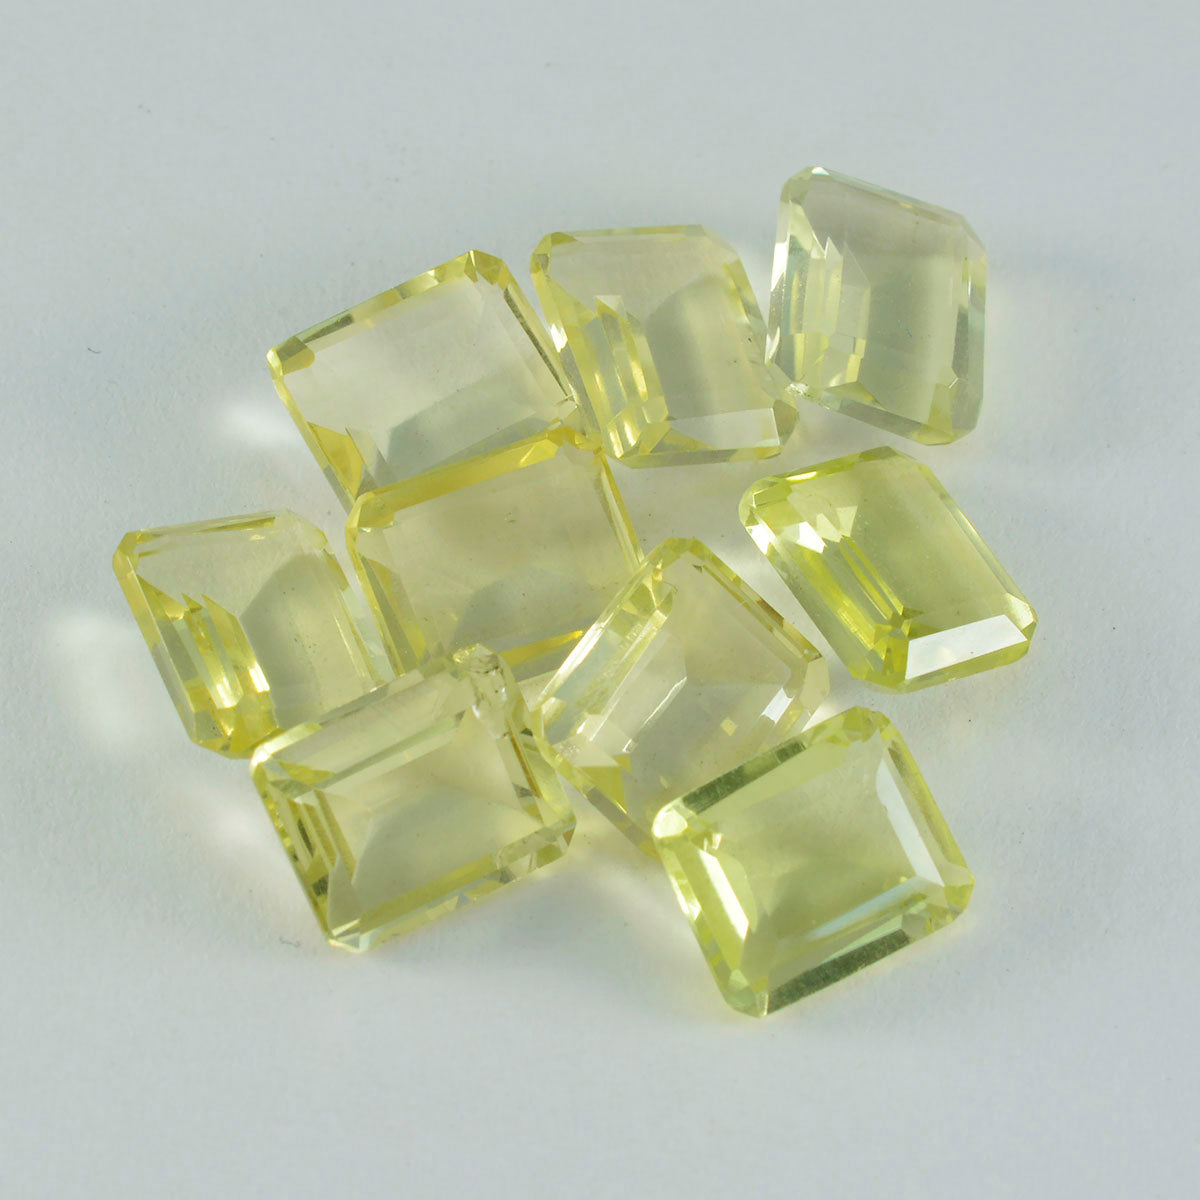 riyogems 1шт желтый лимонный кварц граненый 7x9 мм восьмиугольной формы драгоценный камень хорошего качества